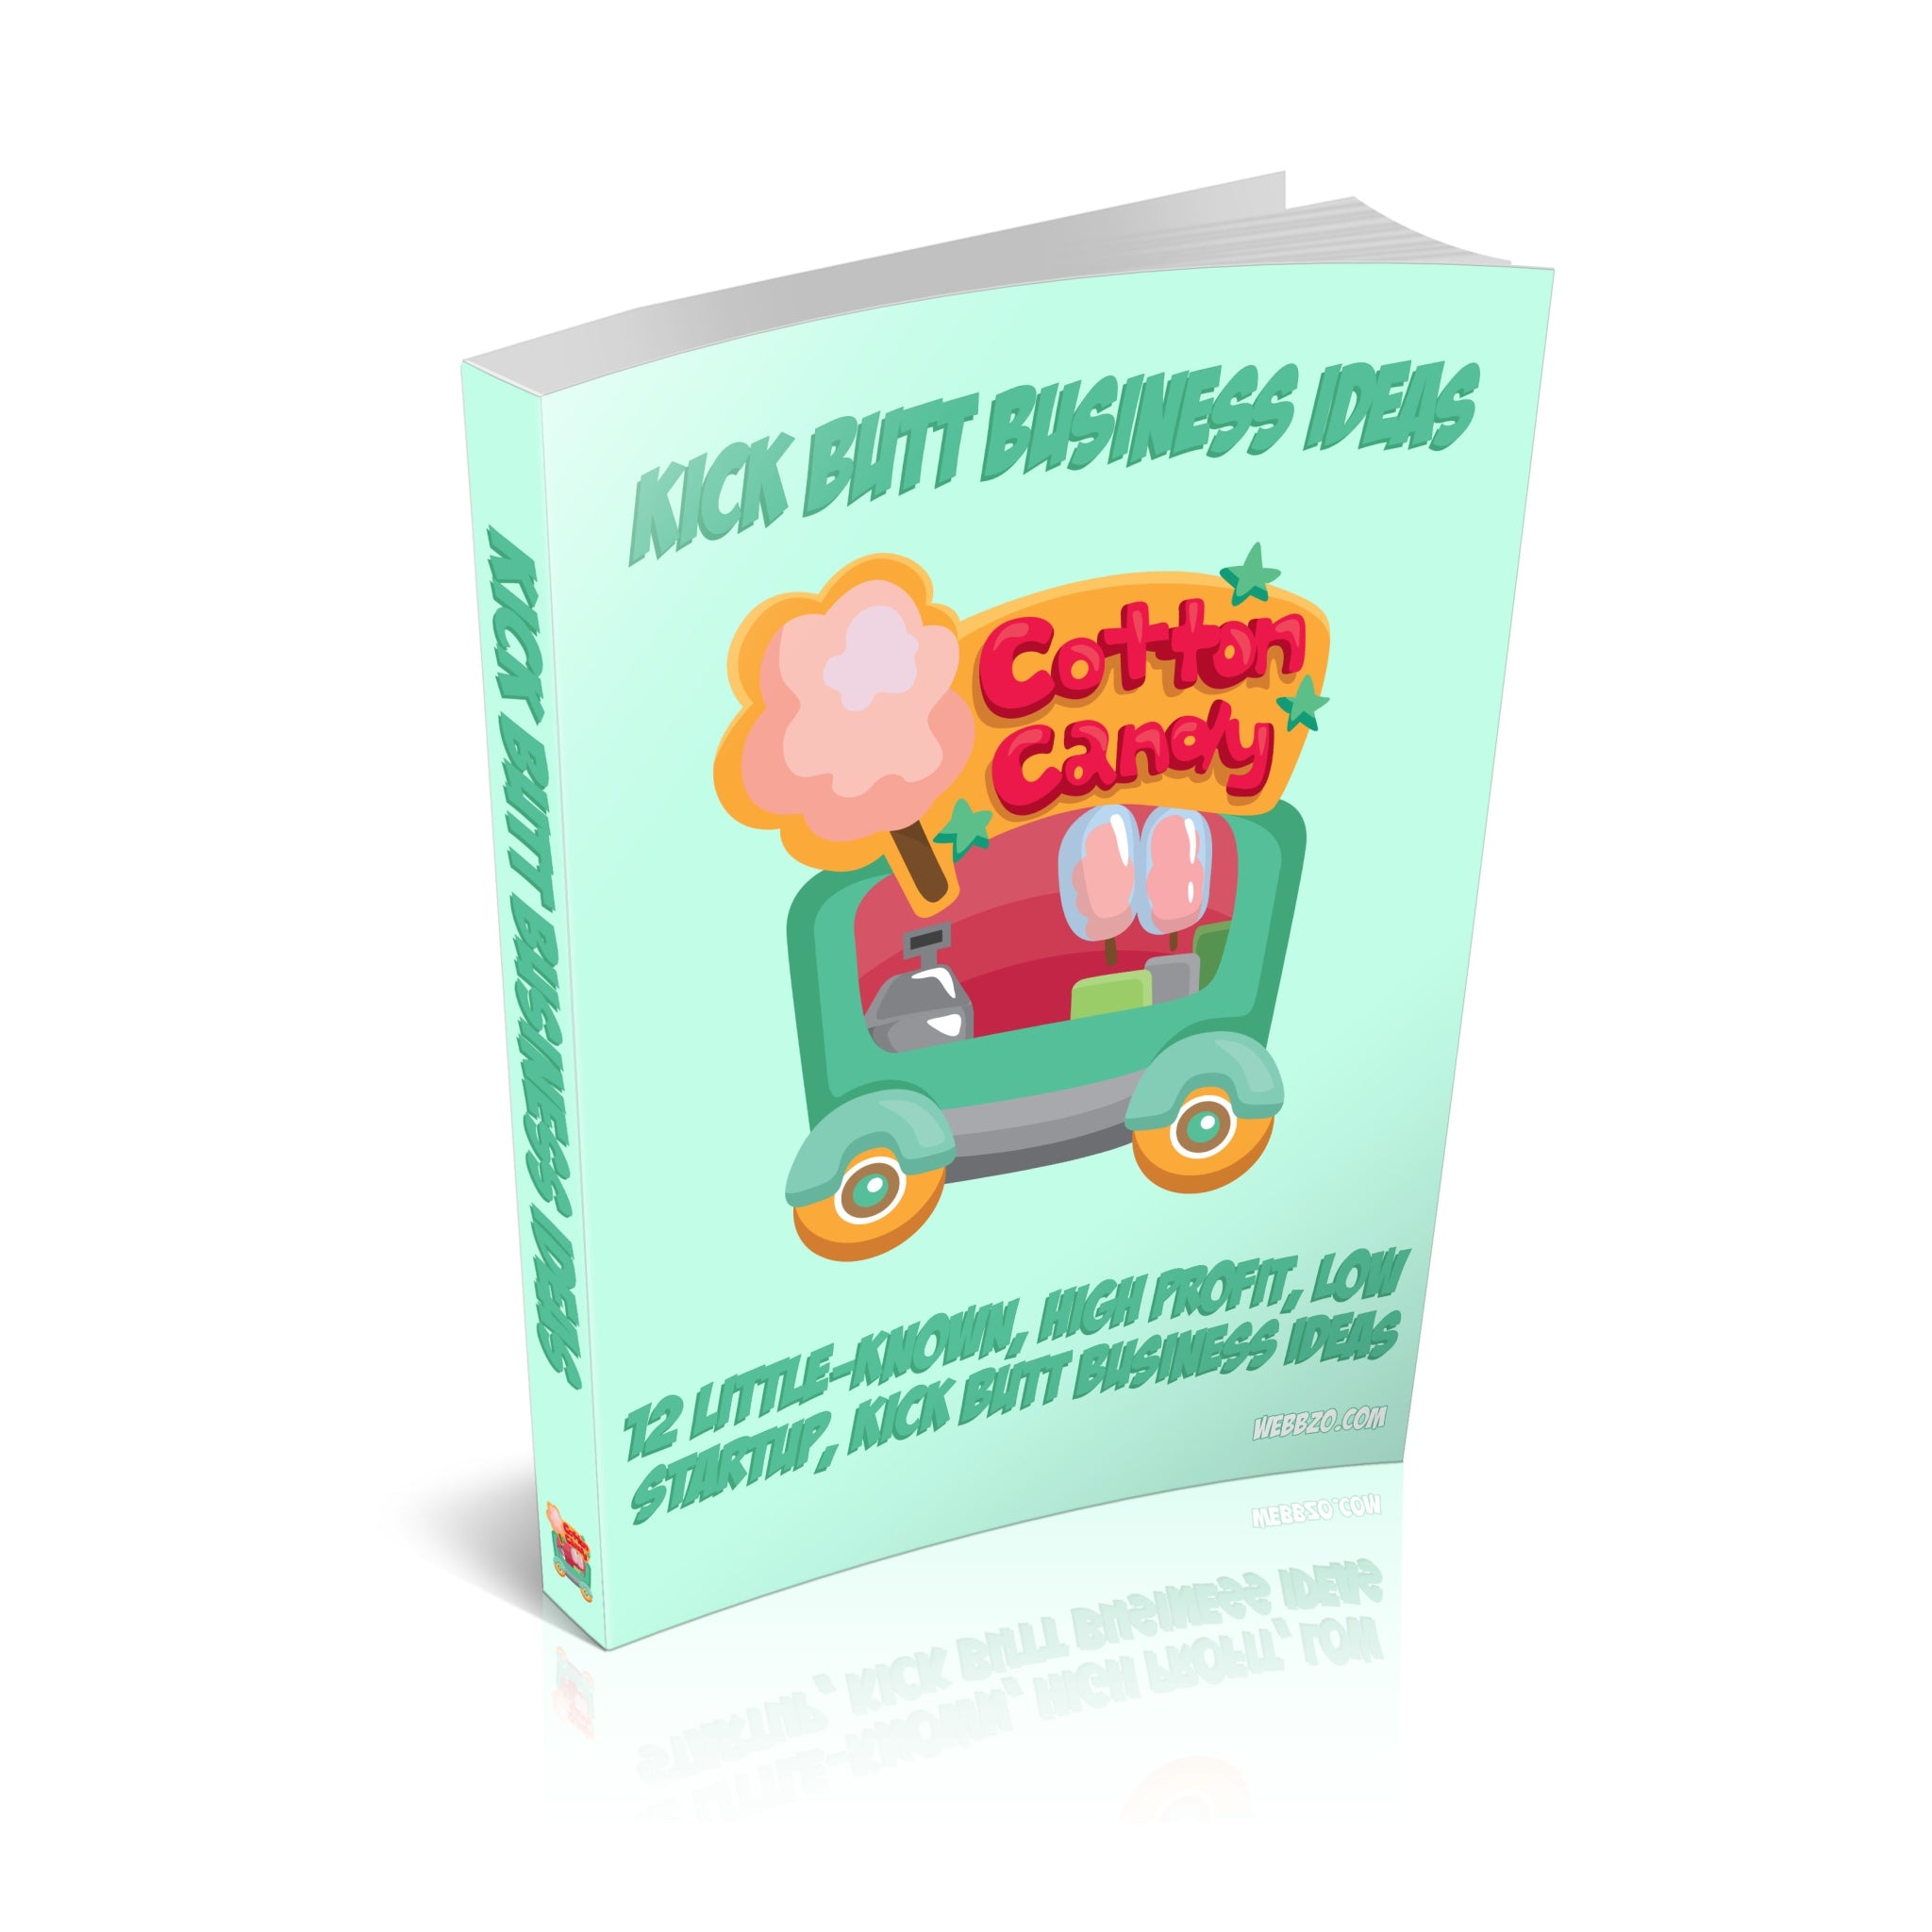 Kick Butt Business Ideas Ebook